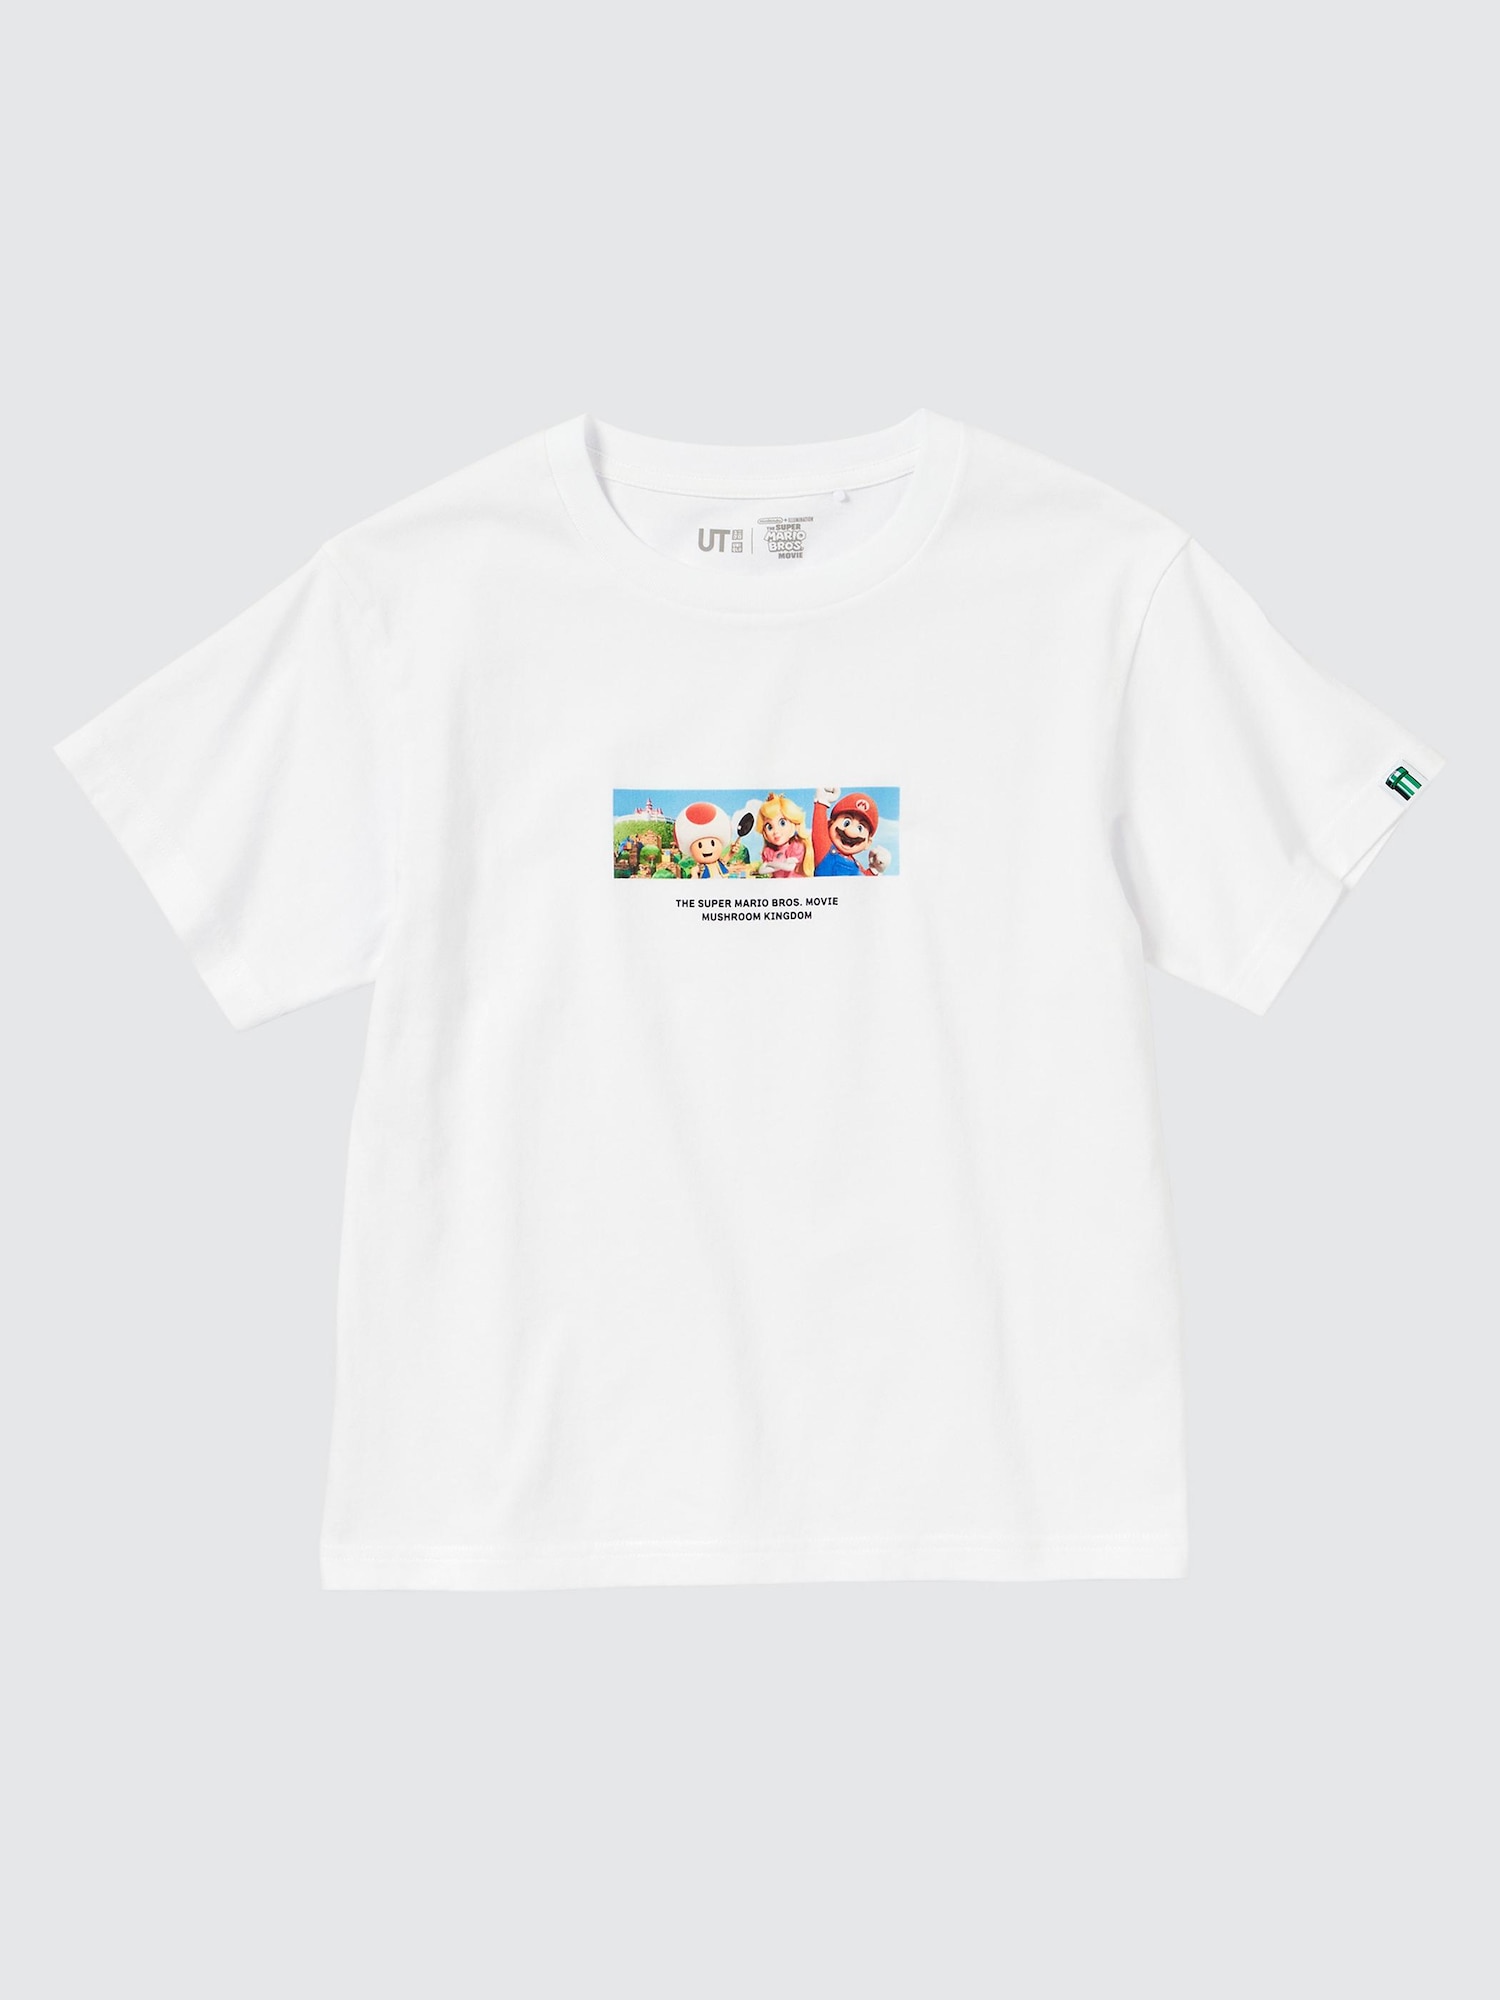 KIDS ザ・スーパーマリオブラザーズ・ムービー UT グラフィックTシャツ 